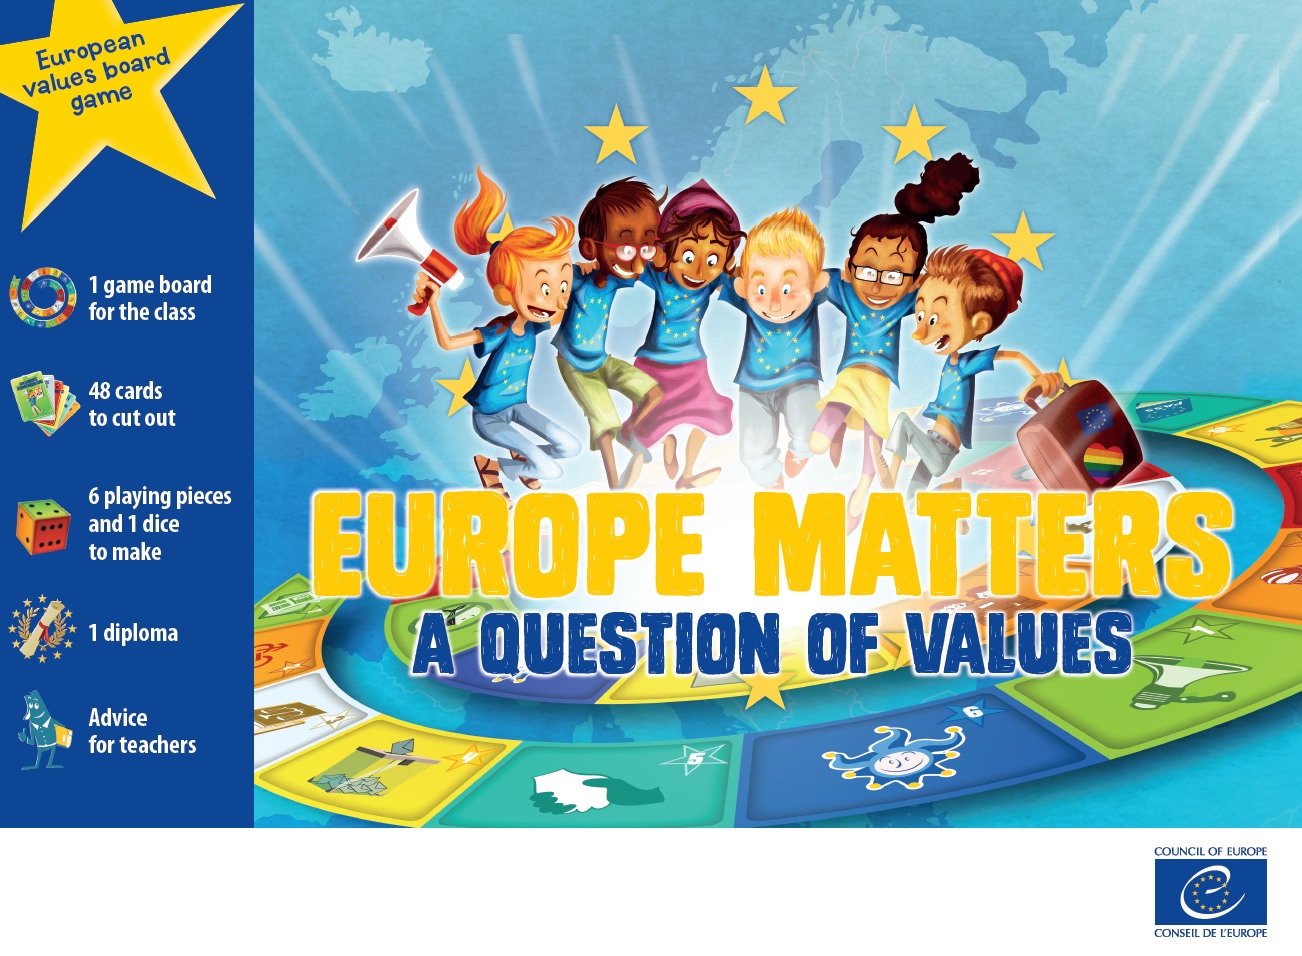 Jeu sur les valeurs de l'Europe, produit pour le Conseil de l'Europe par Mediatools : couverture en anglais